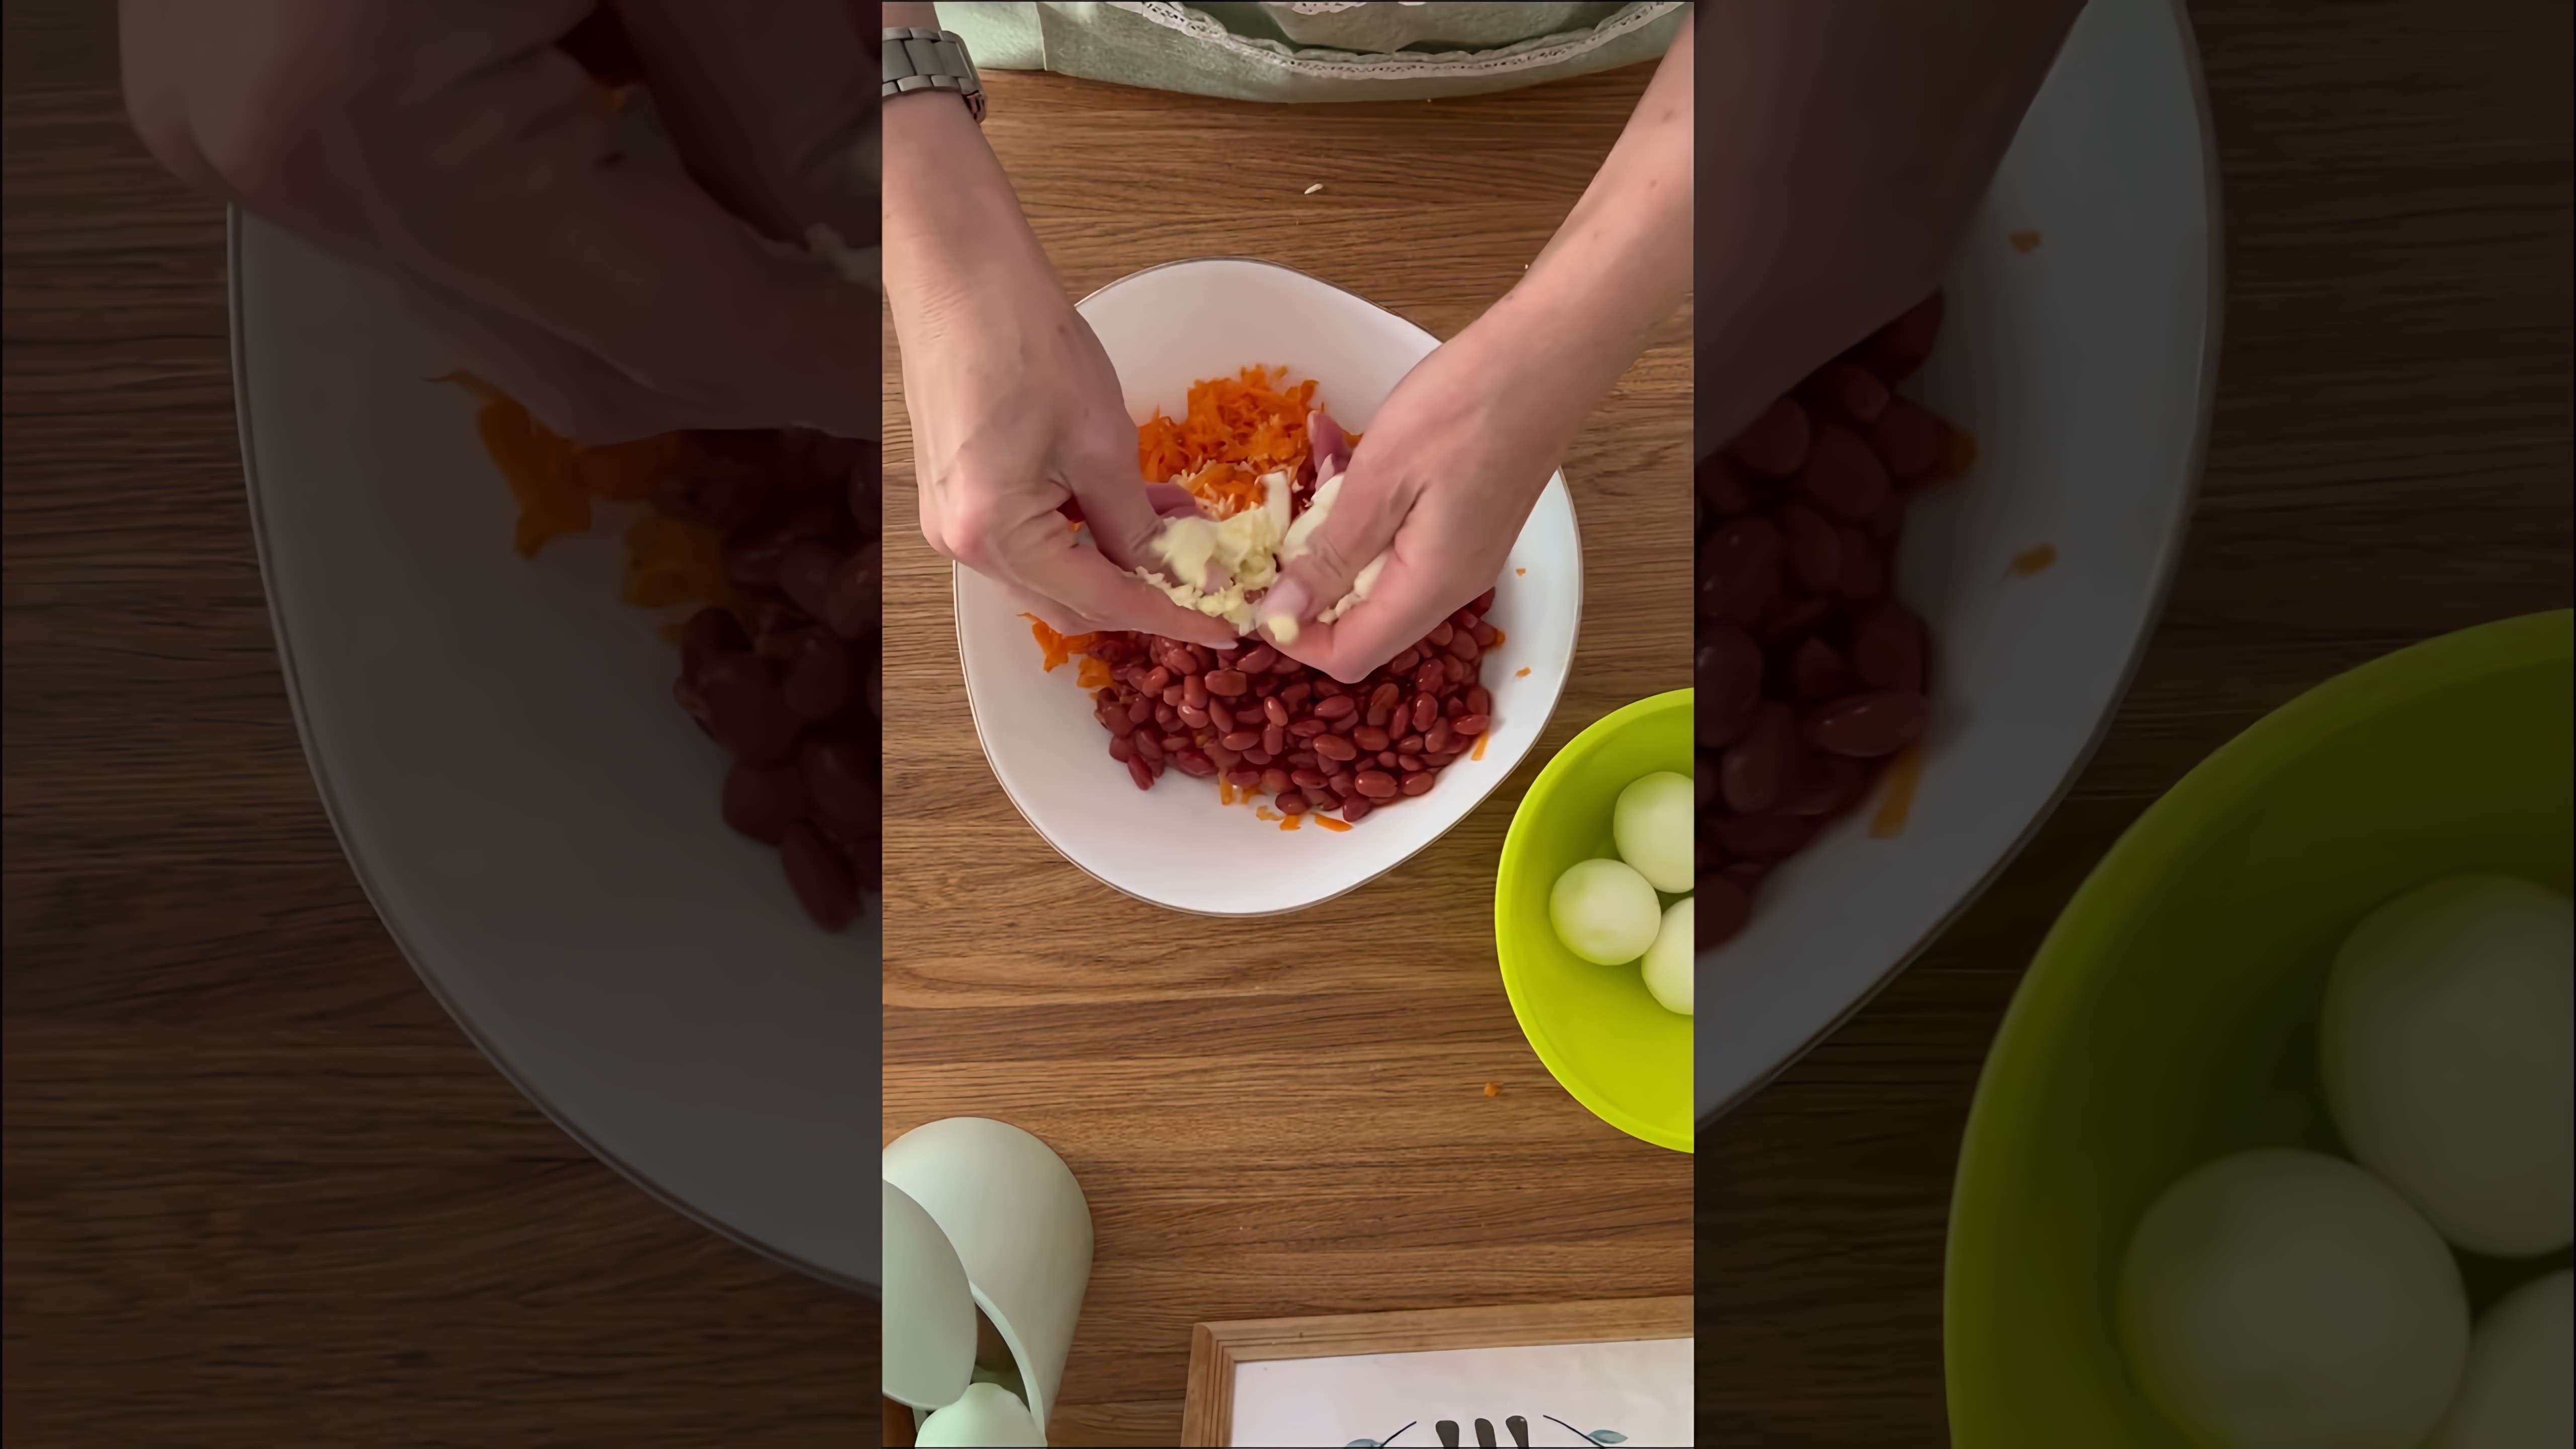 В этом видео-ролике будет представлен рецепт вкусного и питательного блюда, которое можно приготовить из плавленого сырка, моркови, чеснока, красной консервированной фасоли, яиц и майонеза